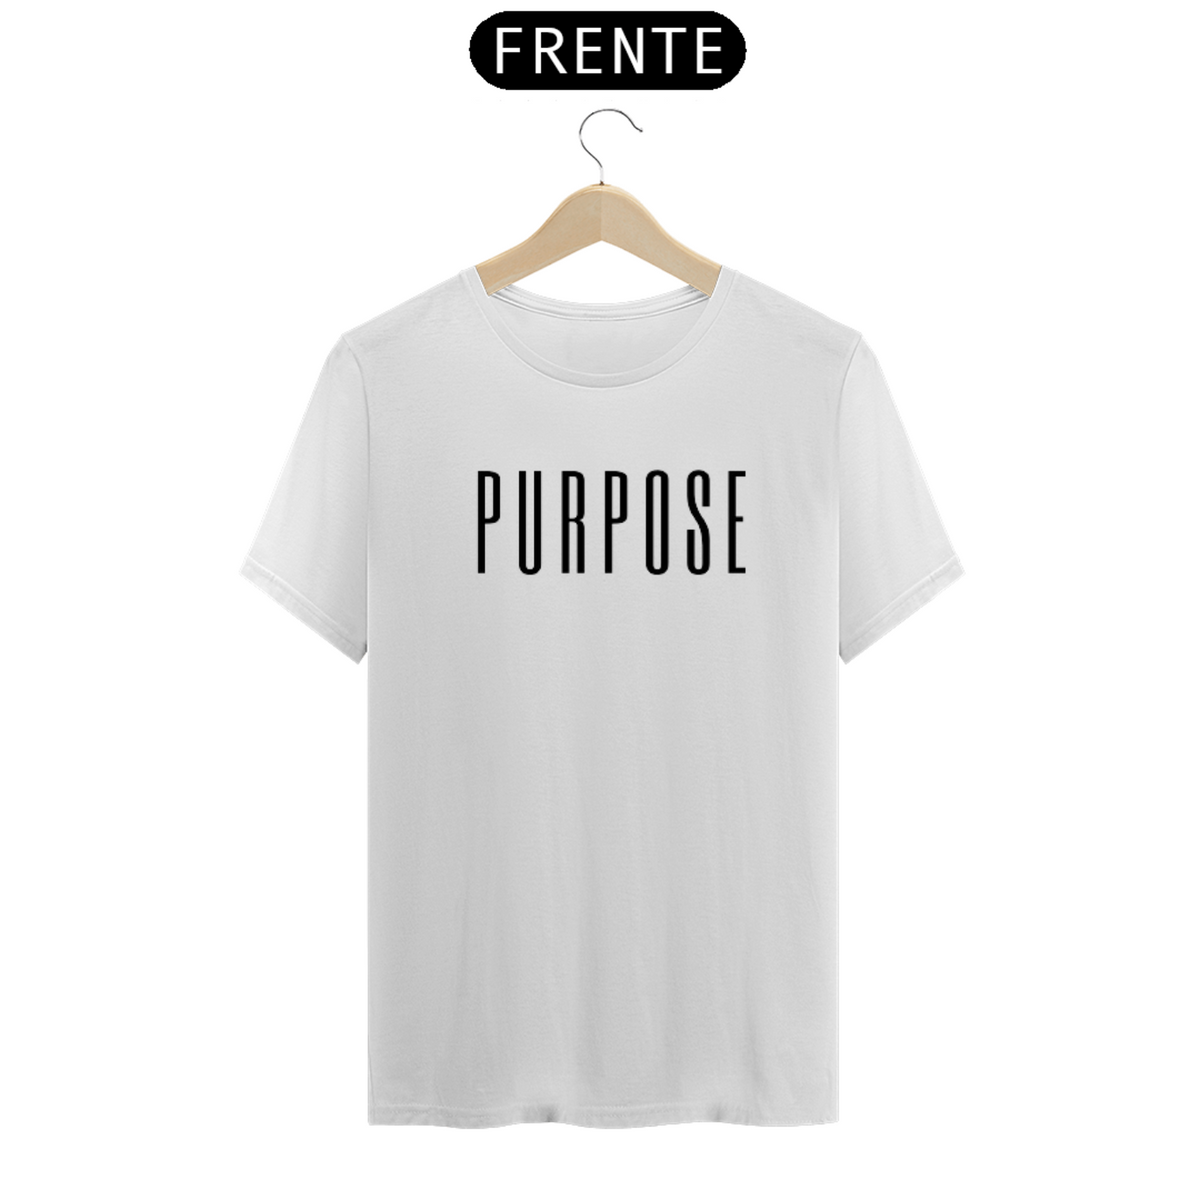 Nome do produto: Camisa Purpose